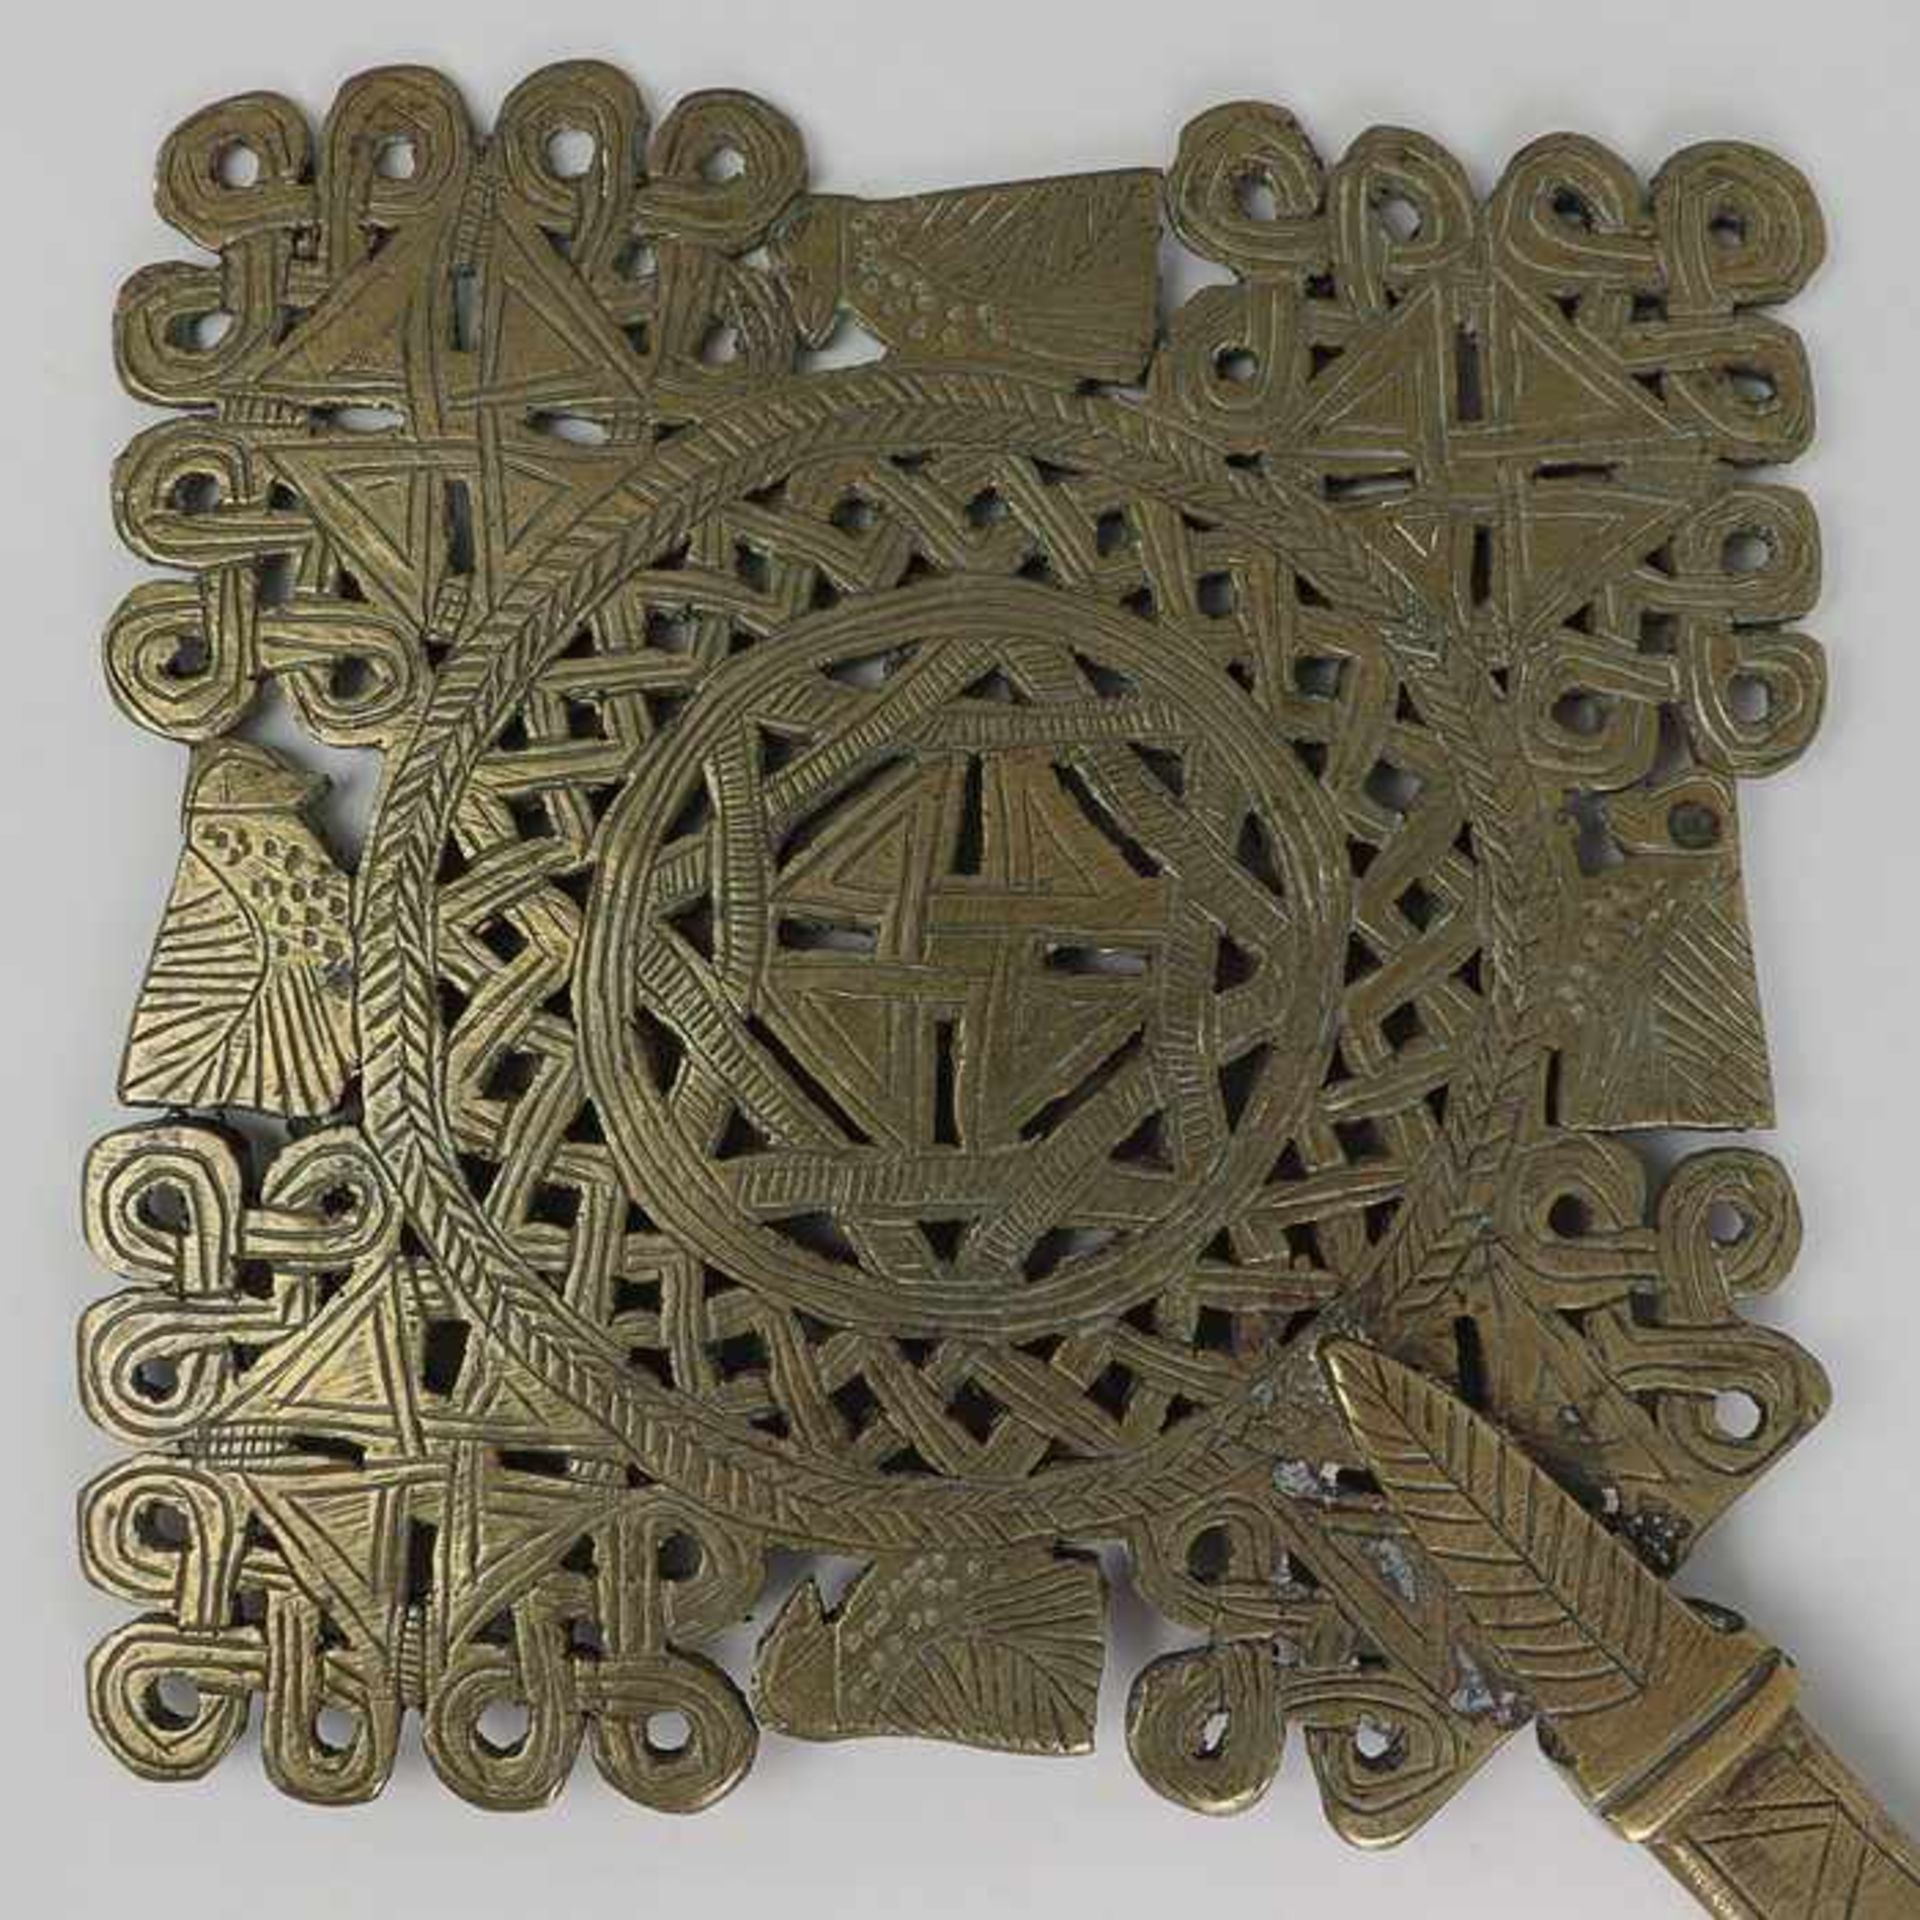 Keltisches KreuzMessing, durchbrochen gearbeitet, graviert, wohl Replik eines keltischen - Bild 3 aus 3